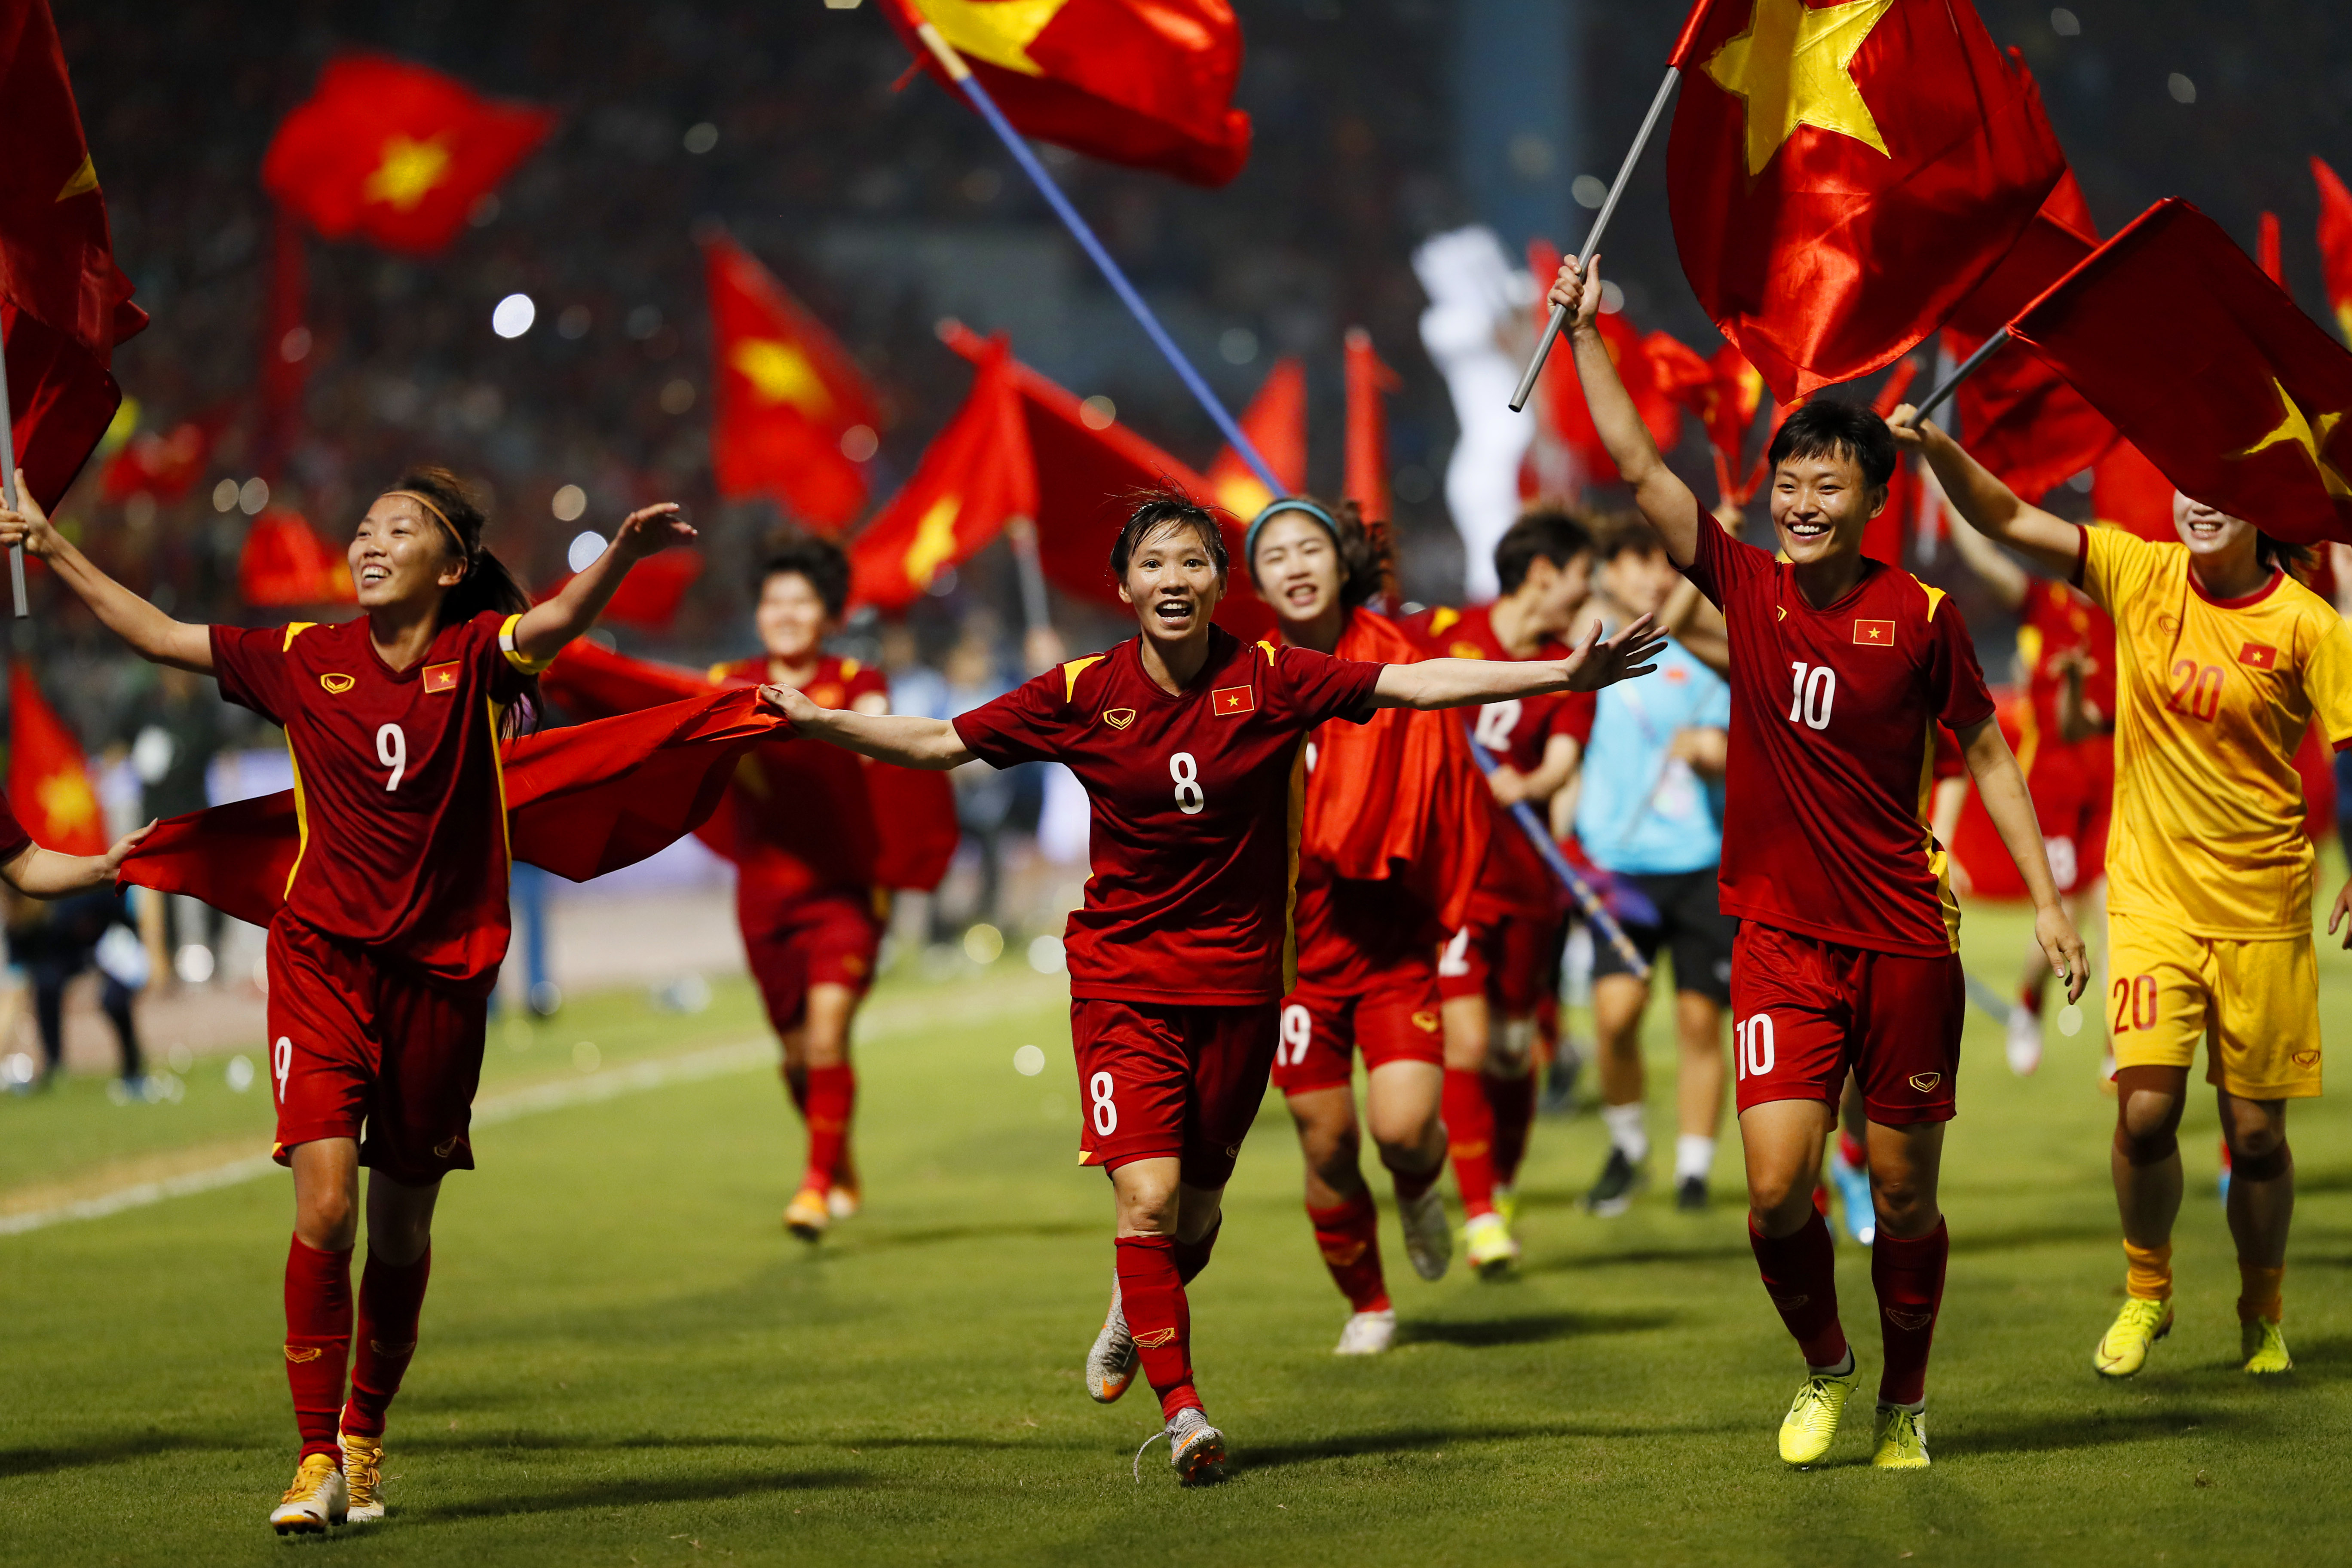 Các cô gái Việt Nam đang chính thức tuyển chọn cho đội bóng quốc gia. Họ là những người phụ nữ mạnh mẽ, đầy nhiệt huyết và nỗ lực để đưa đội tuyển lên đỉnh vinh quang. Hãy cùng xem hình ảnh của họ để cảm nhận được sự kiên định và đam mê của những nàng công chúa trên sân cỏ.